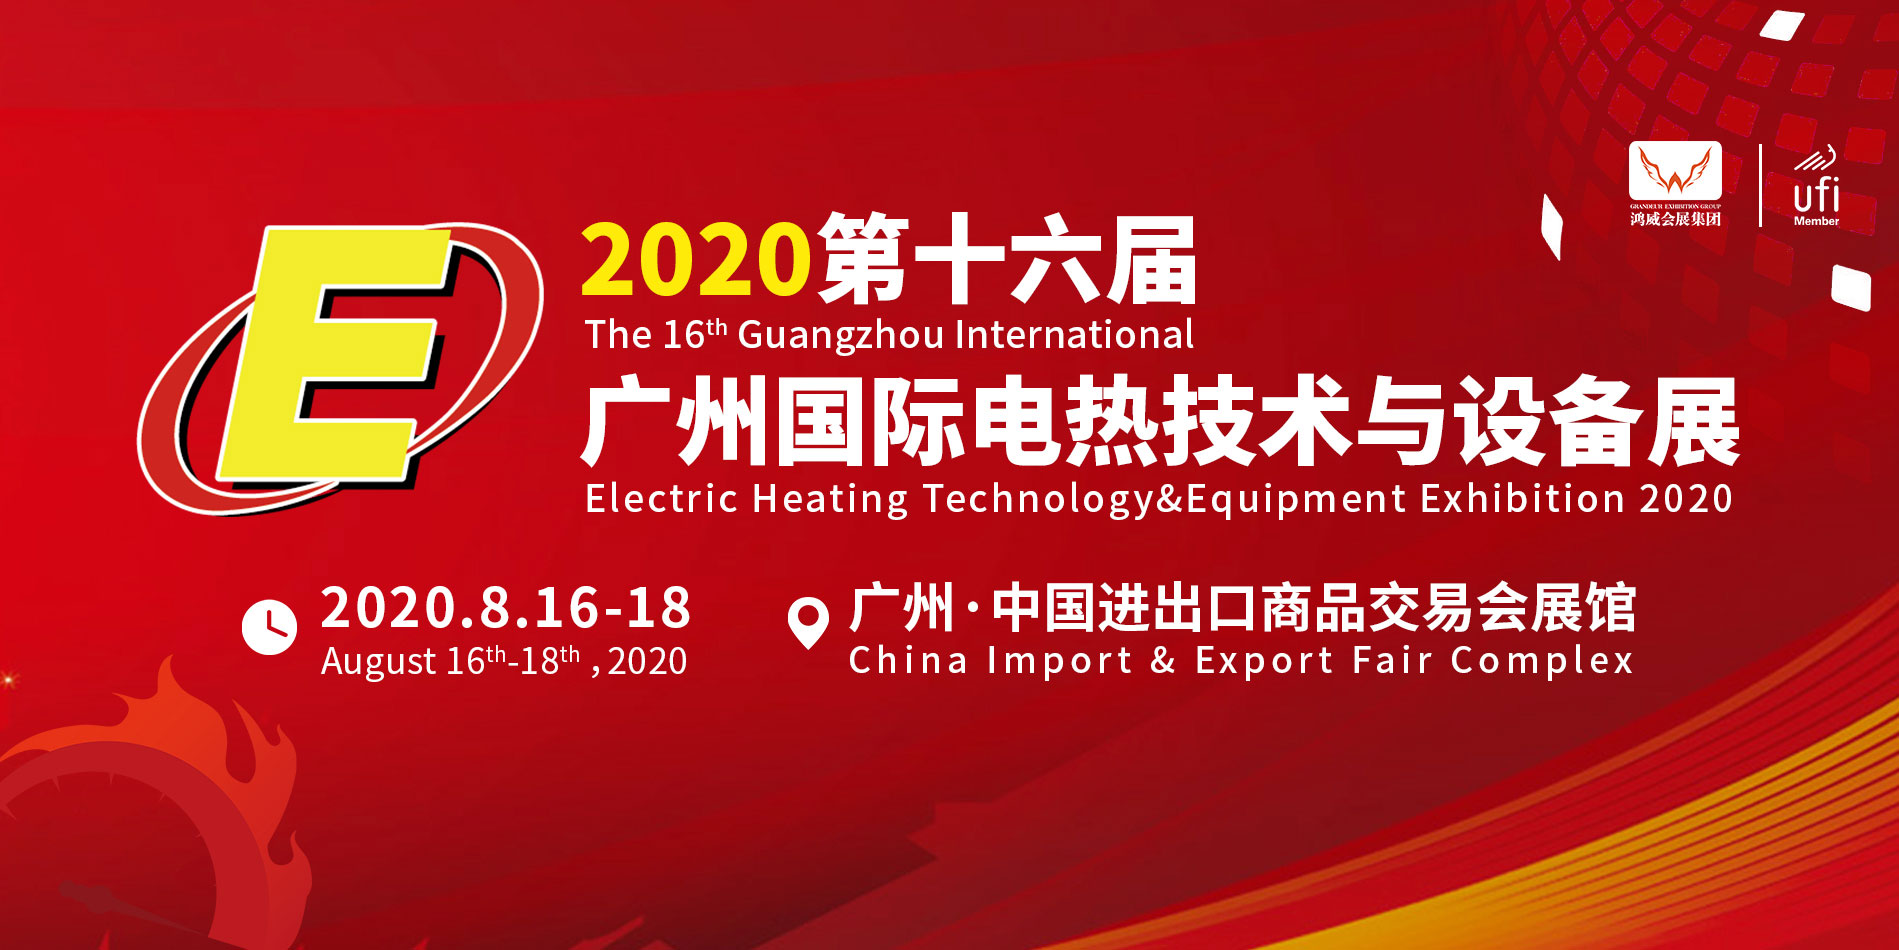 2020燃气技术展览会